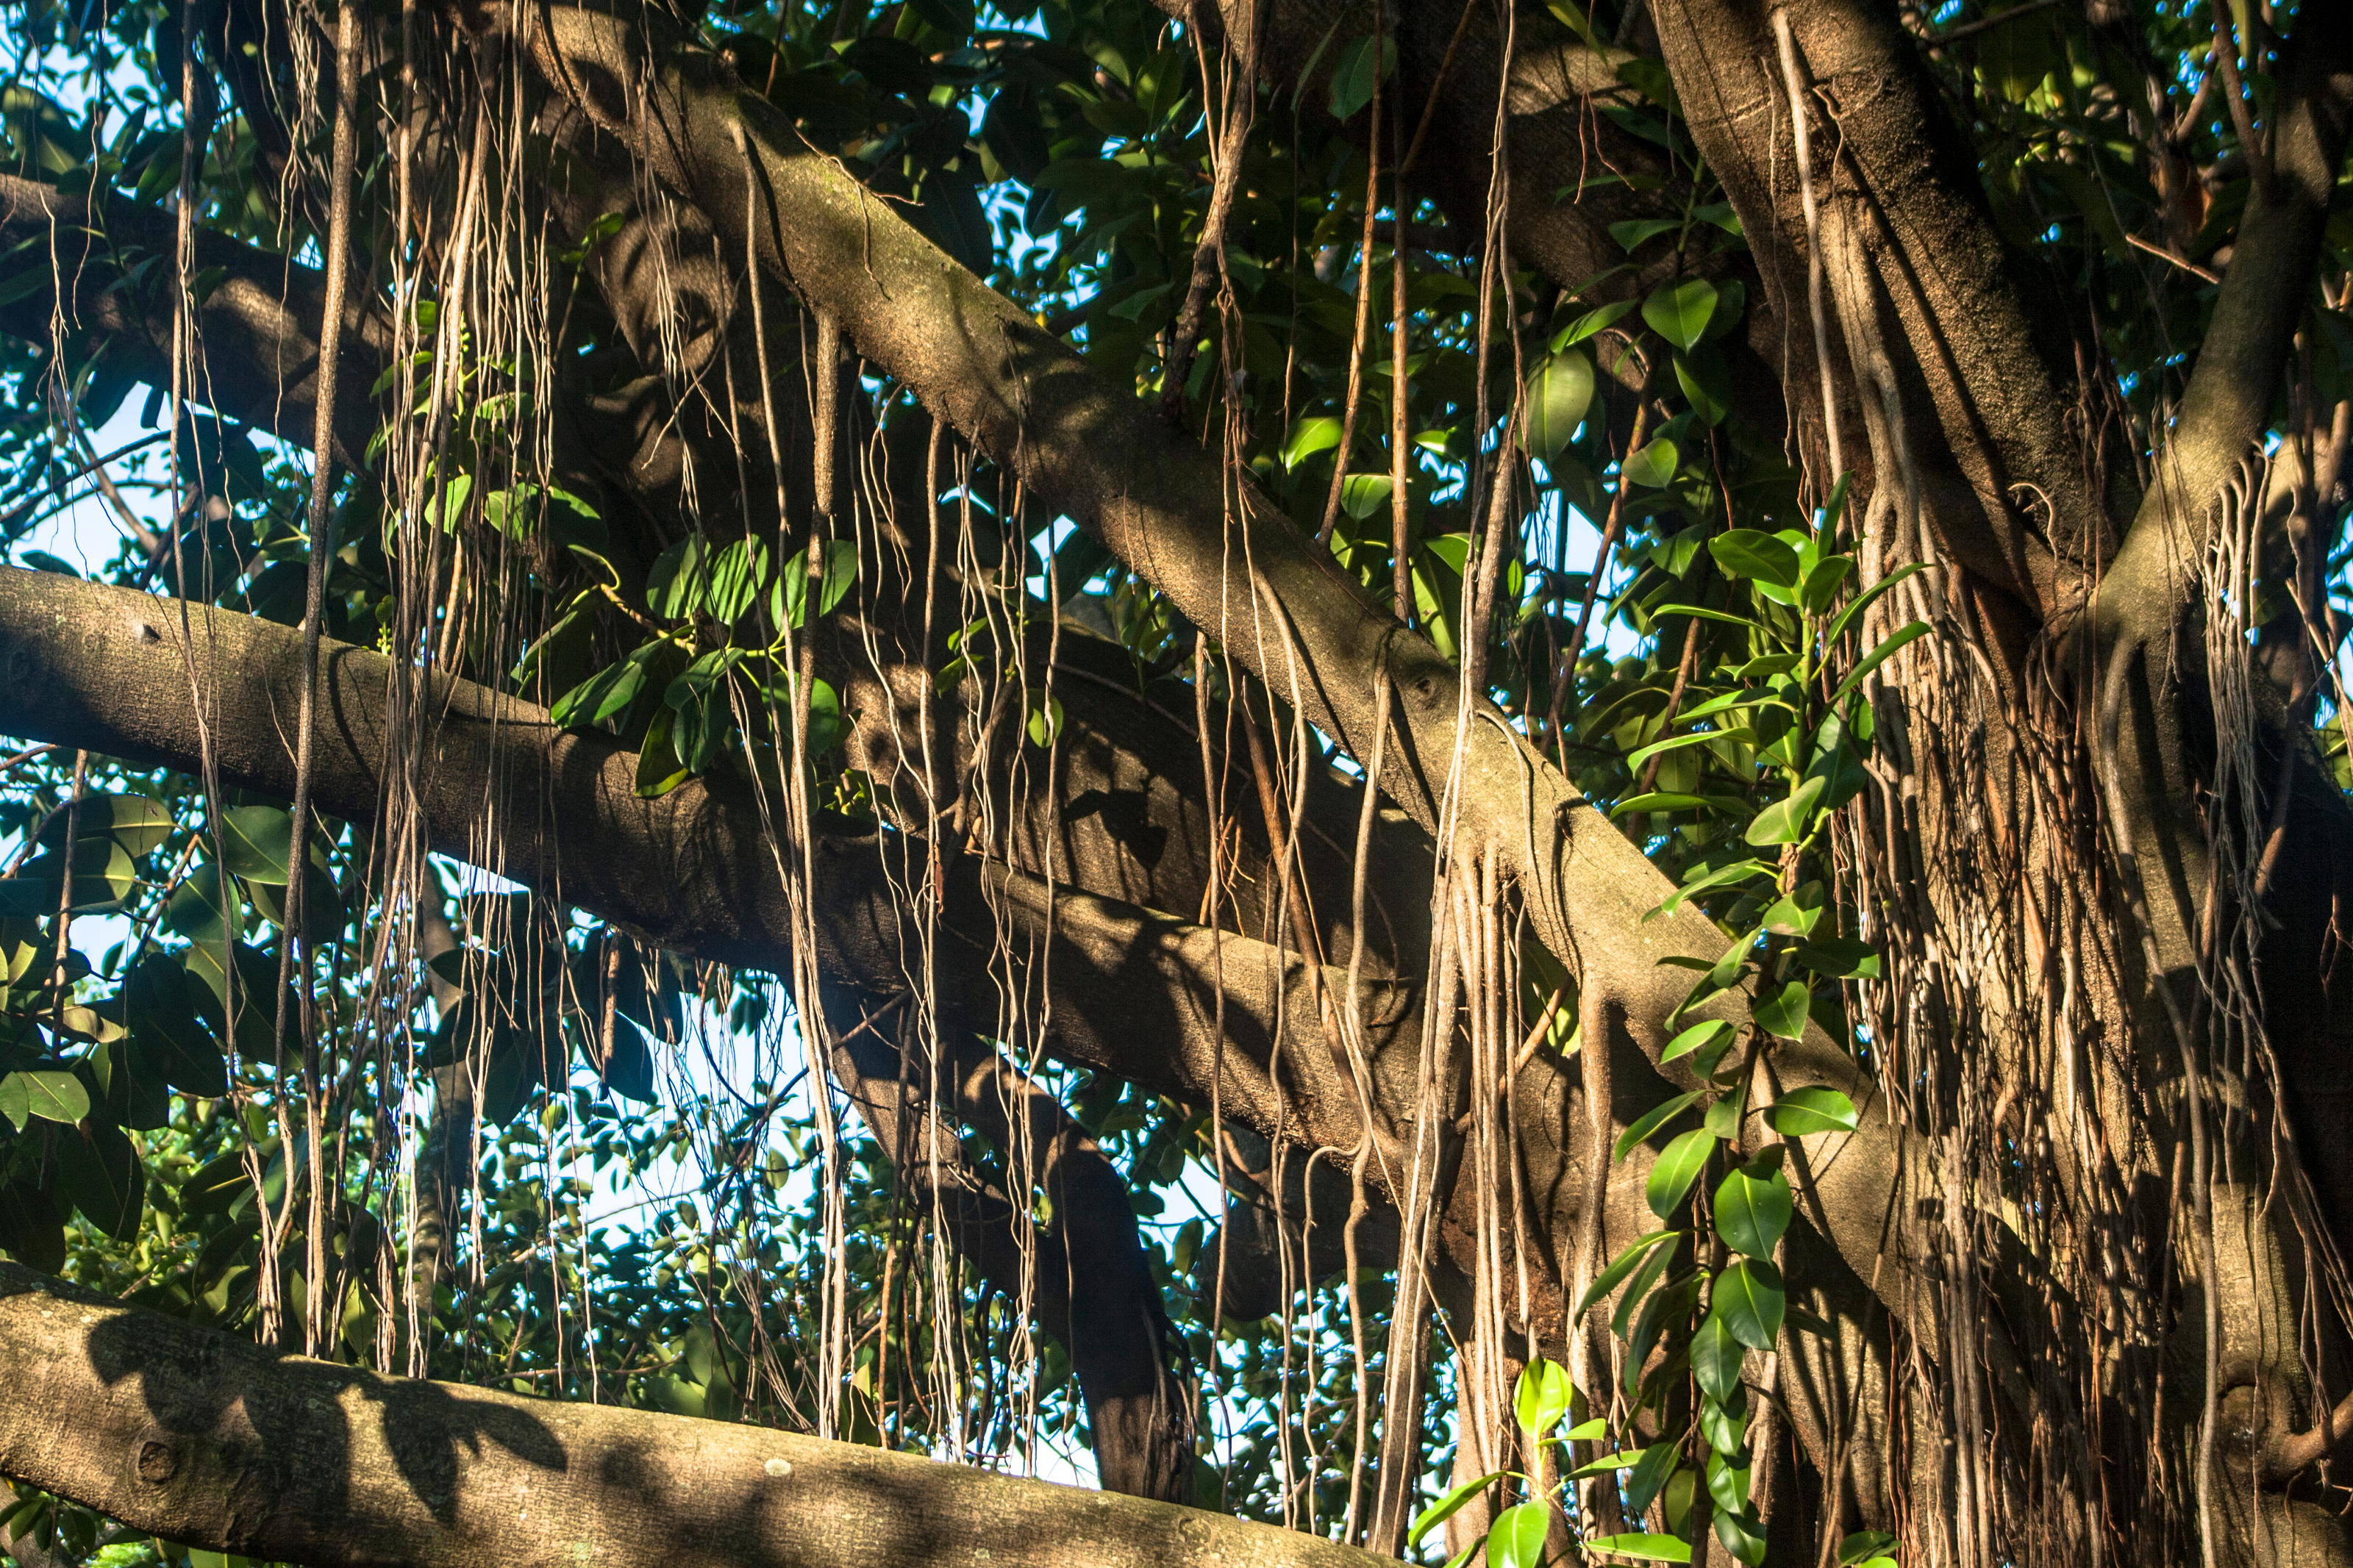 Фикус воздушные корни. Каучук из фикуса. Фикусы из тропических лесов великаны с воздушными корнями. Мост из каучукового фикуса.